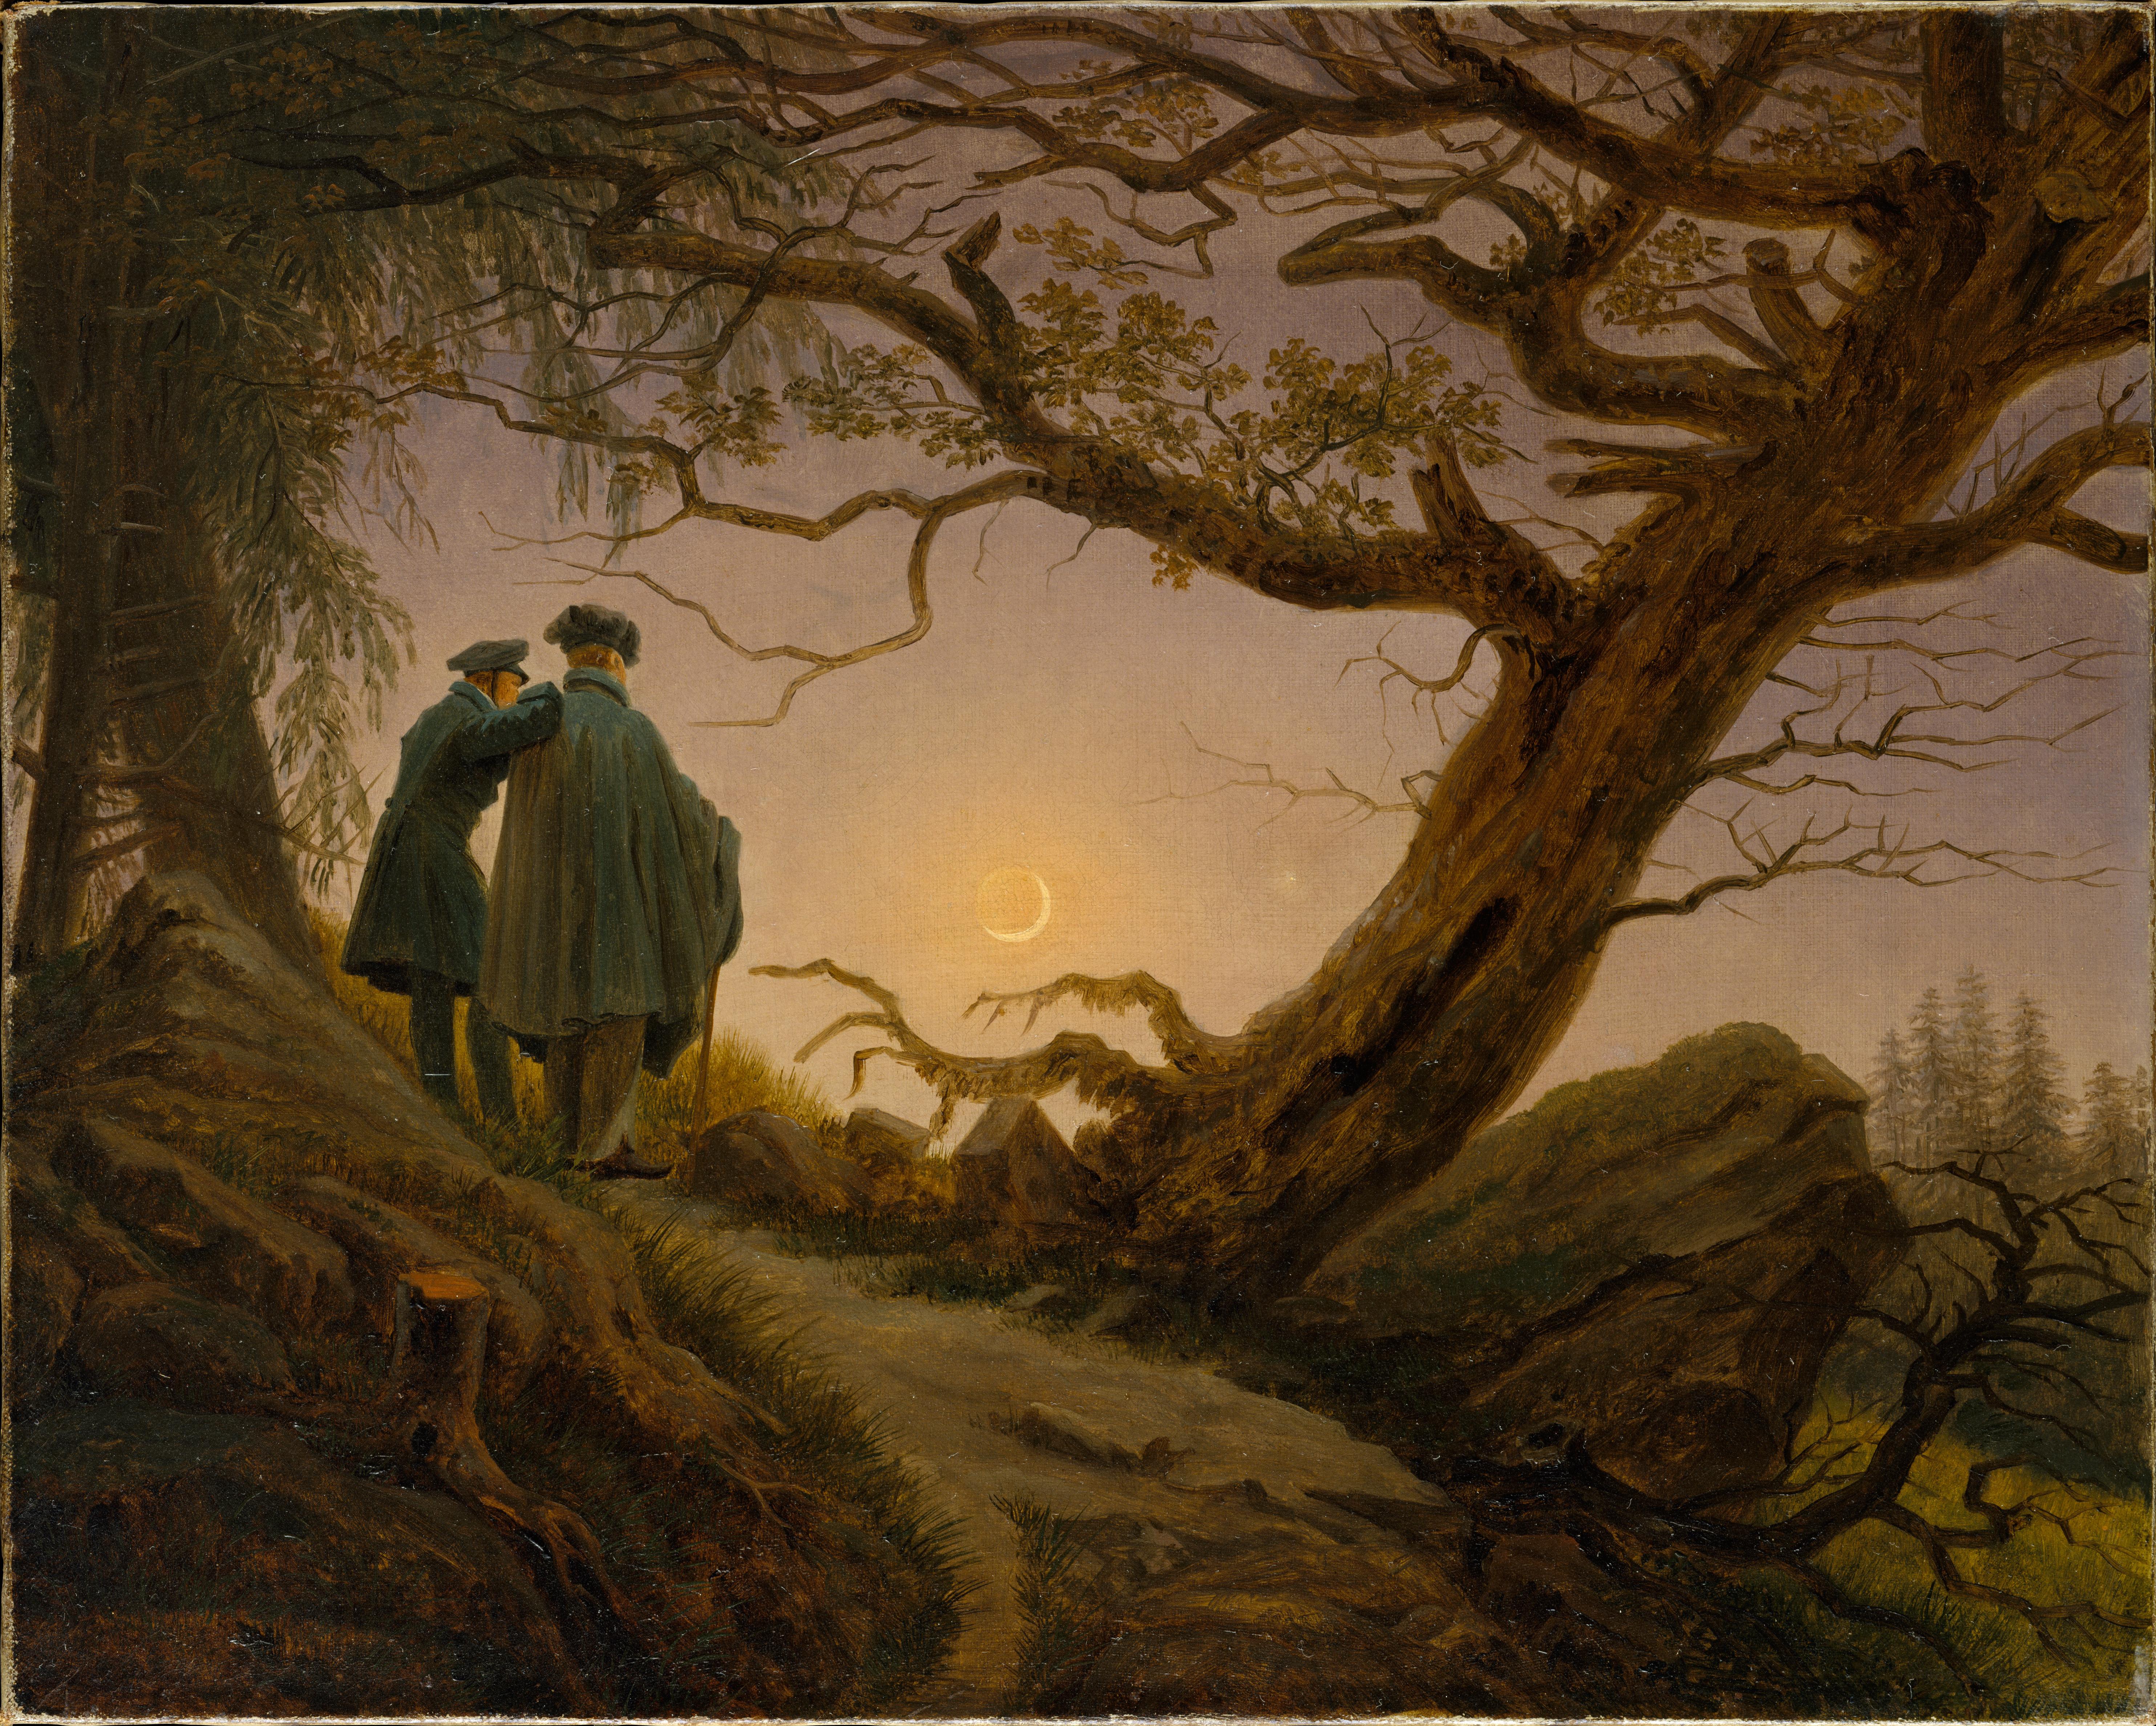 Ayı Seyreden İki Erkek by Caspar David Friedrich - 1825-1830 - - 